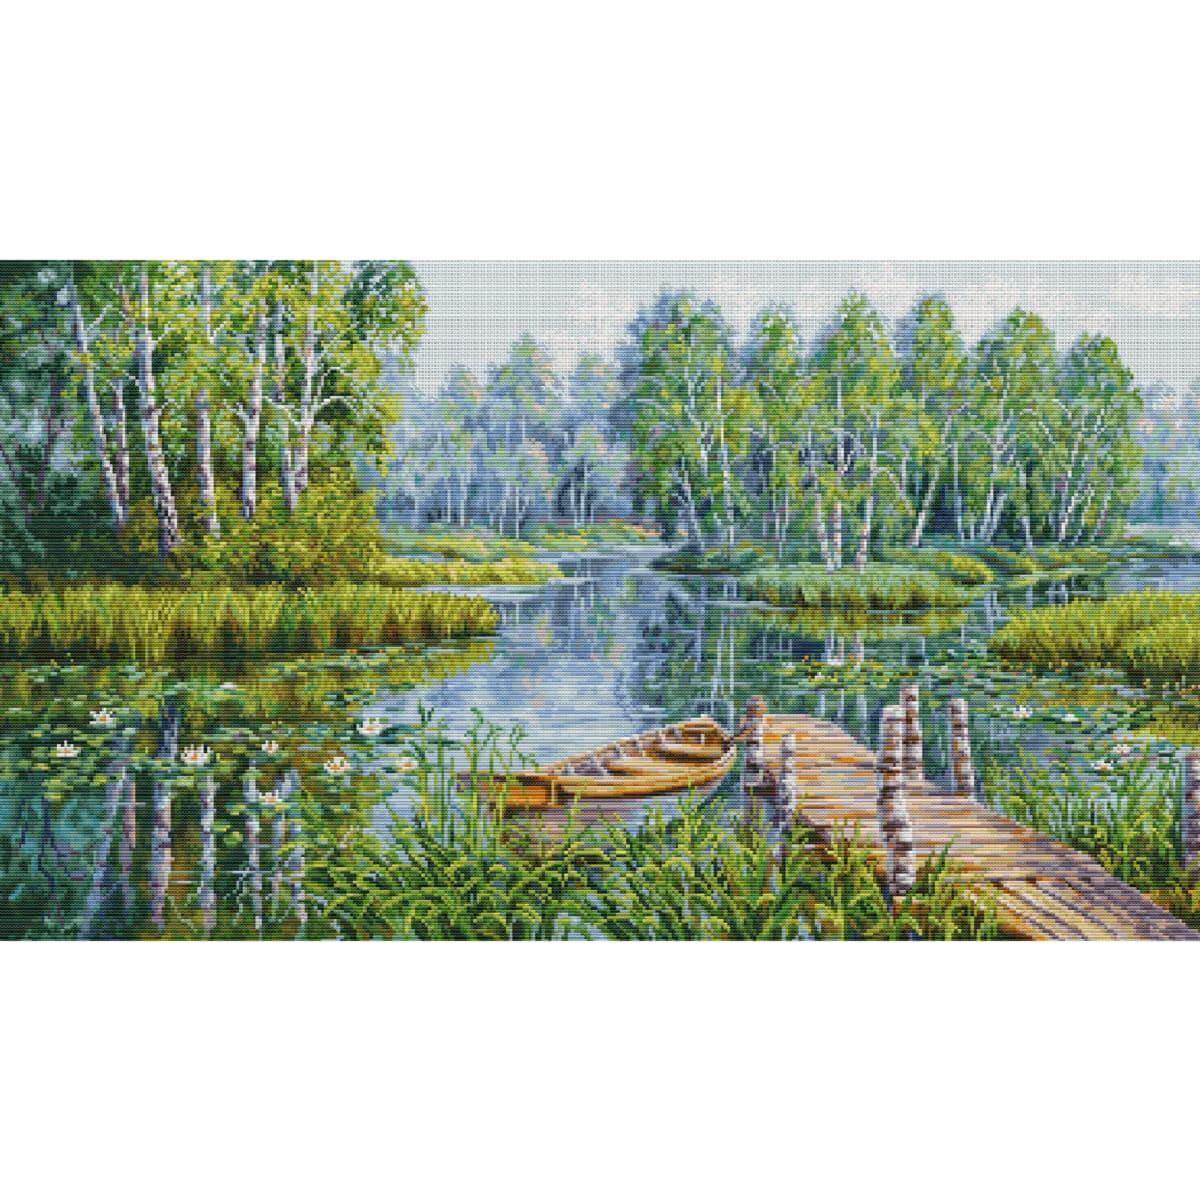 Un paysage calme montre un ponton en bois qui savance...